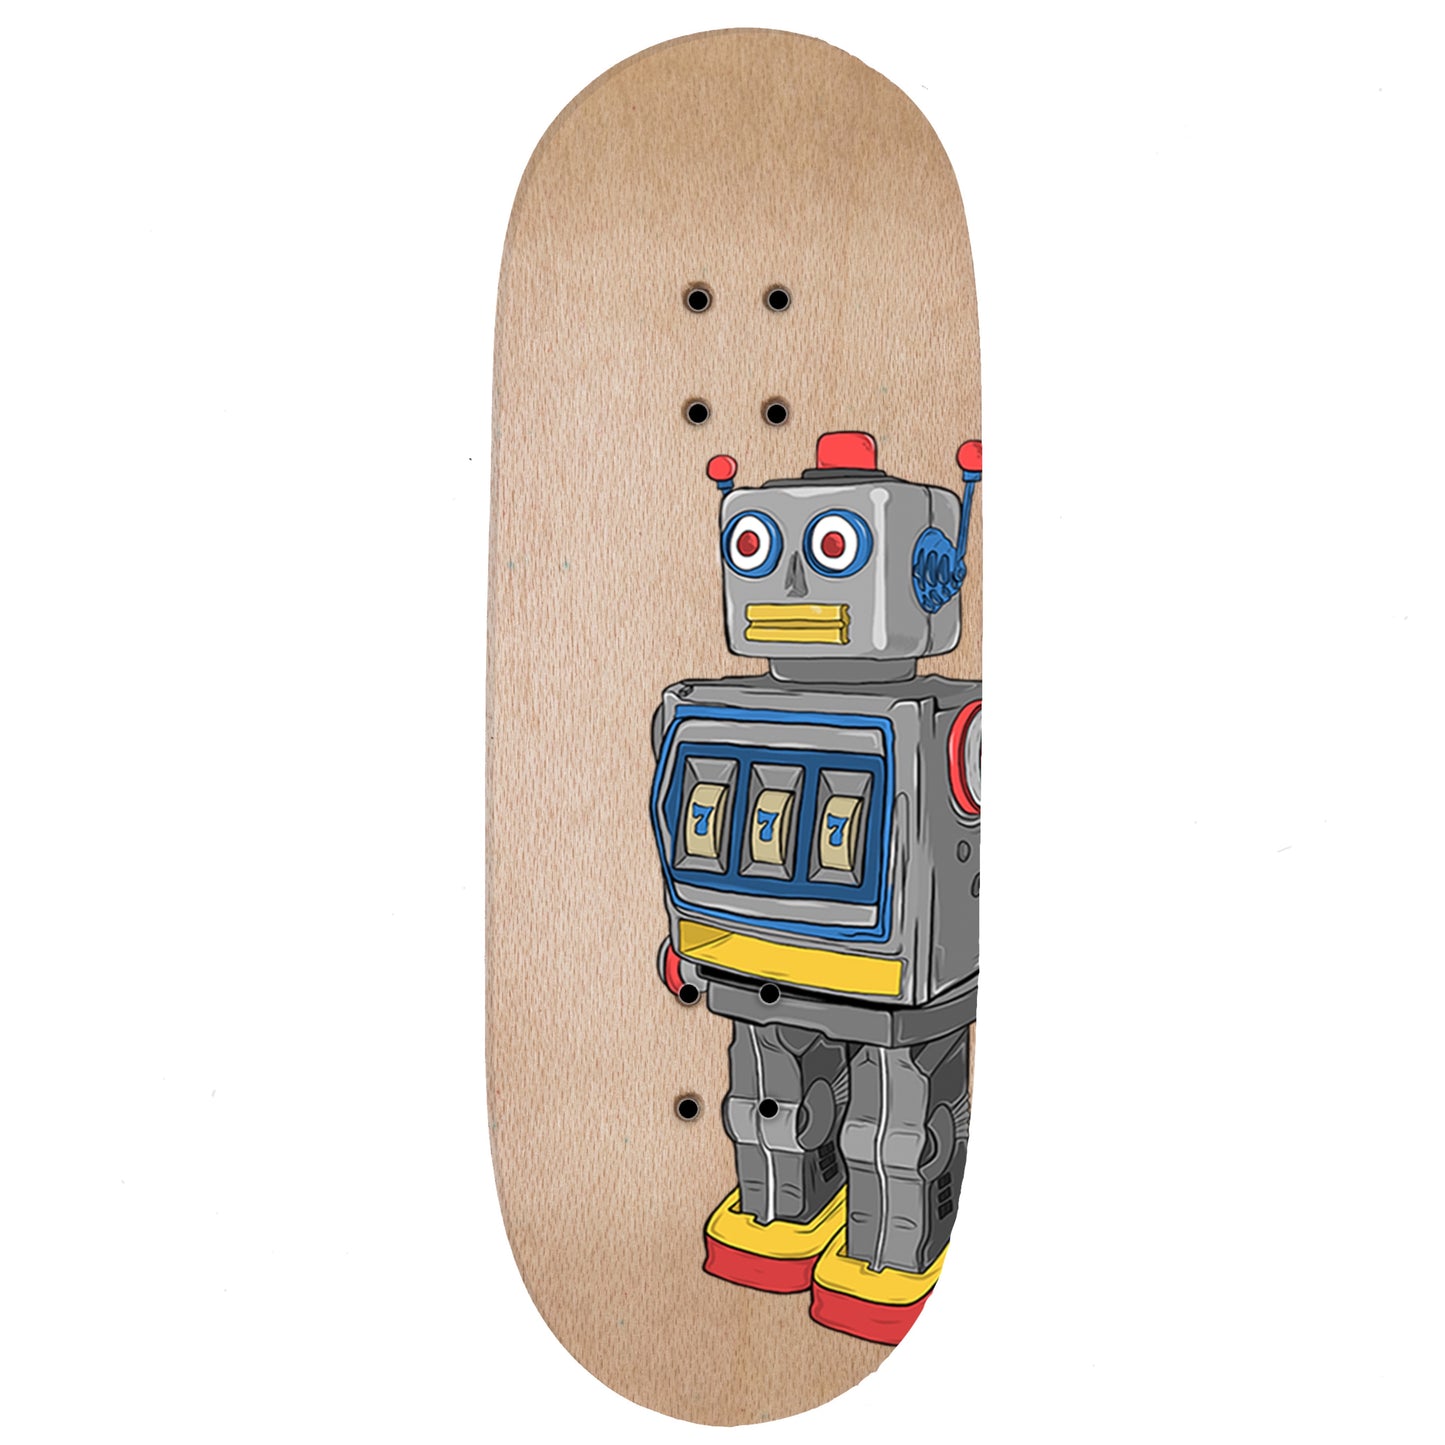 RedWolf “Robo” Fingerboard Deck